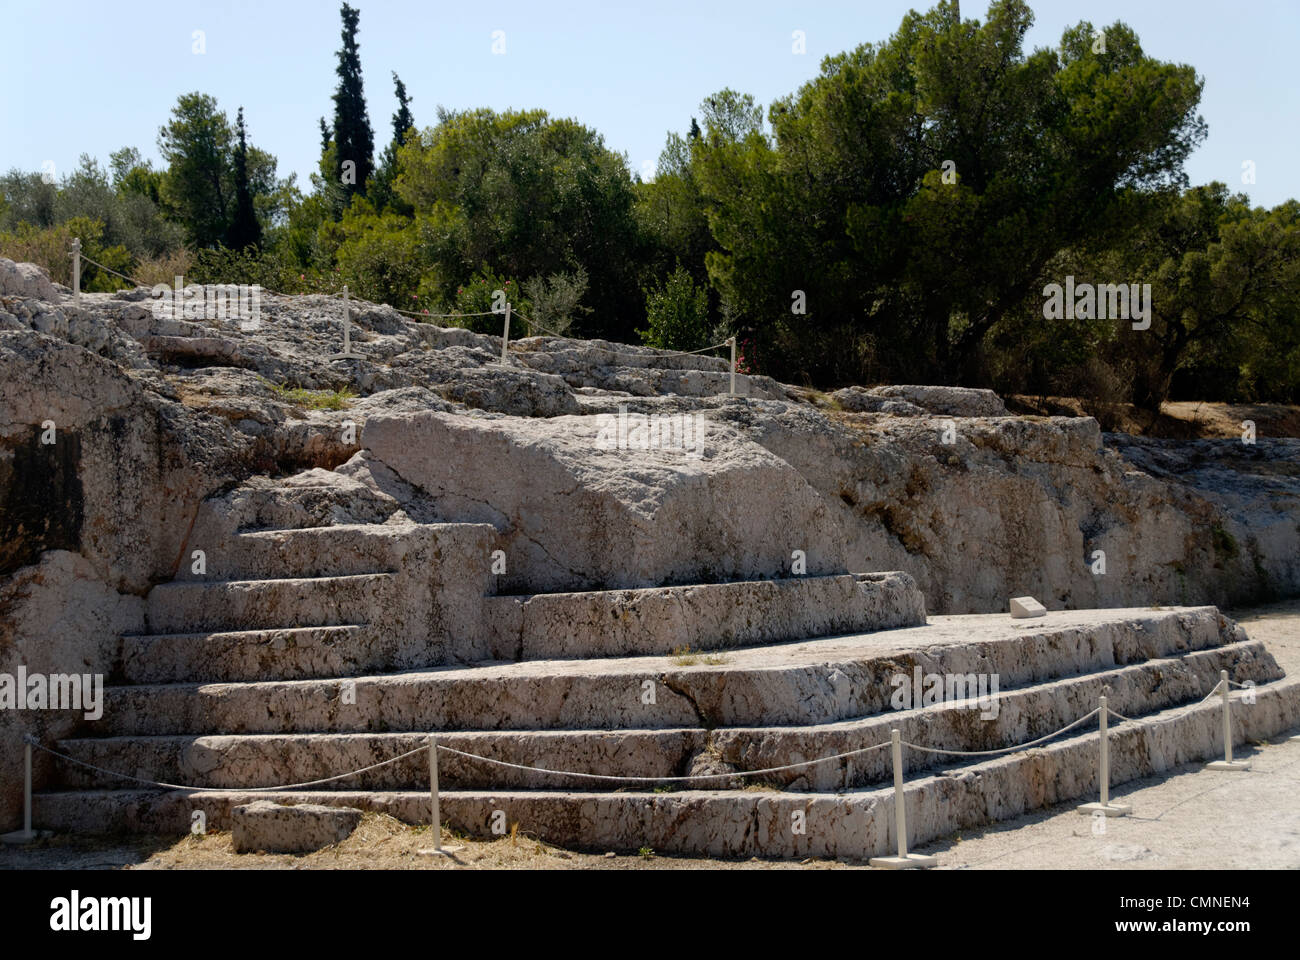 La colina Pnyx. Atenas. Grecia. En vista de la colina Pnyx, Bema la plataforma escalonada tallado en la piedra angular de los altavoces Foto de stock